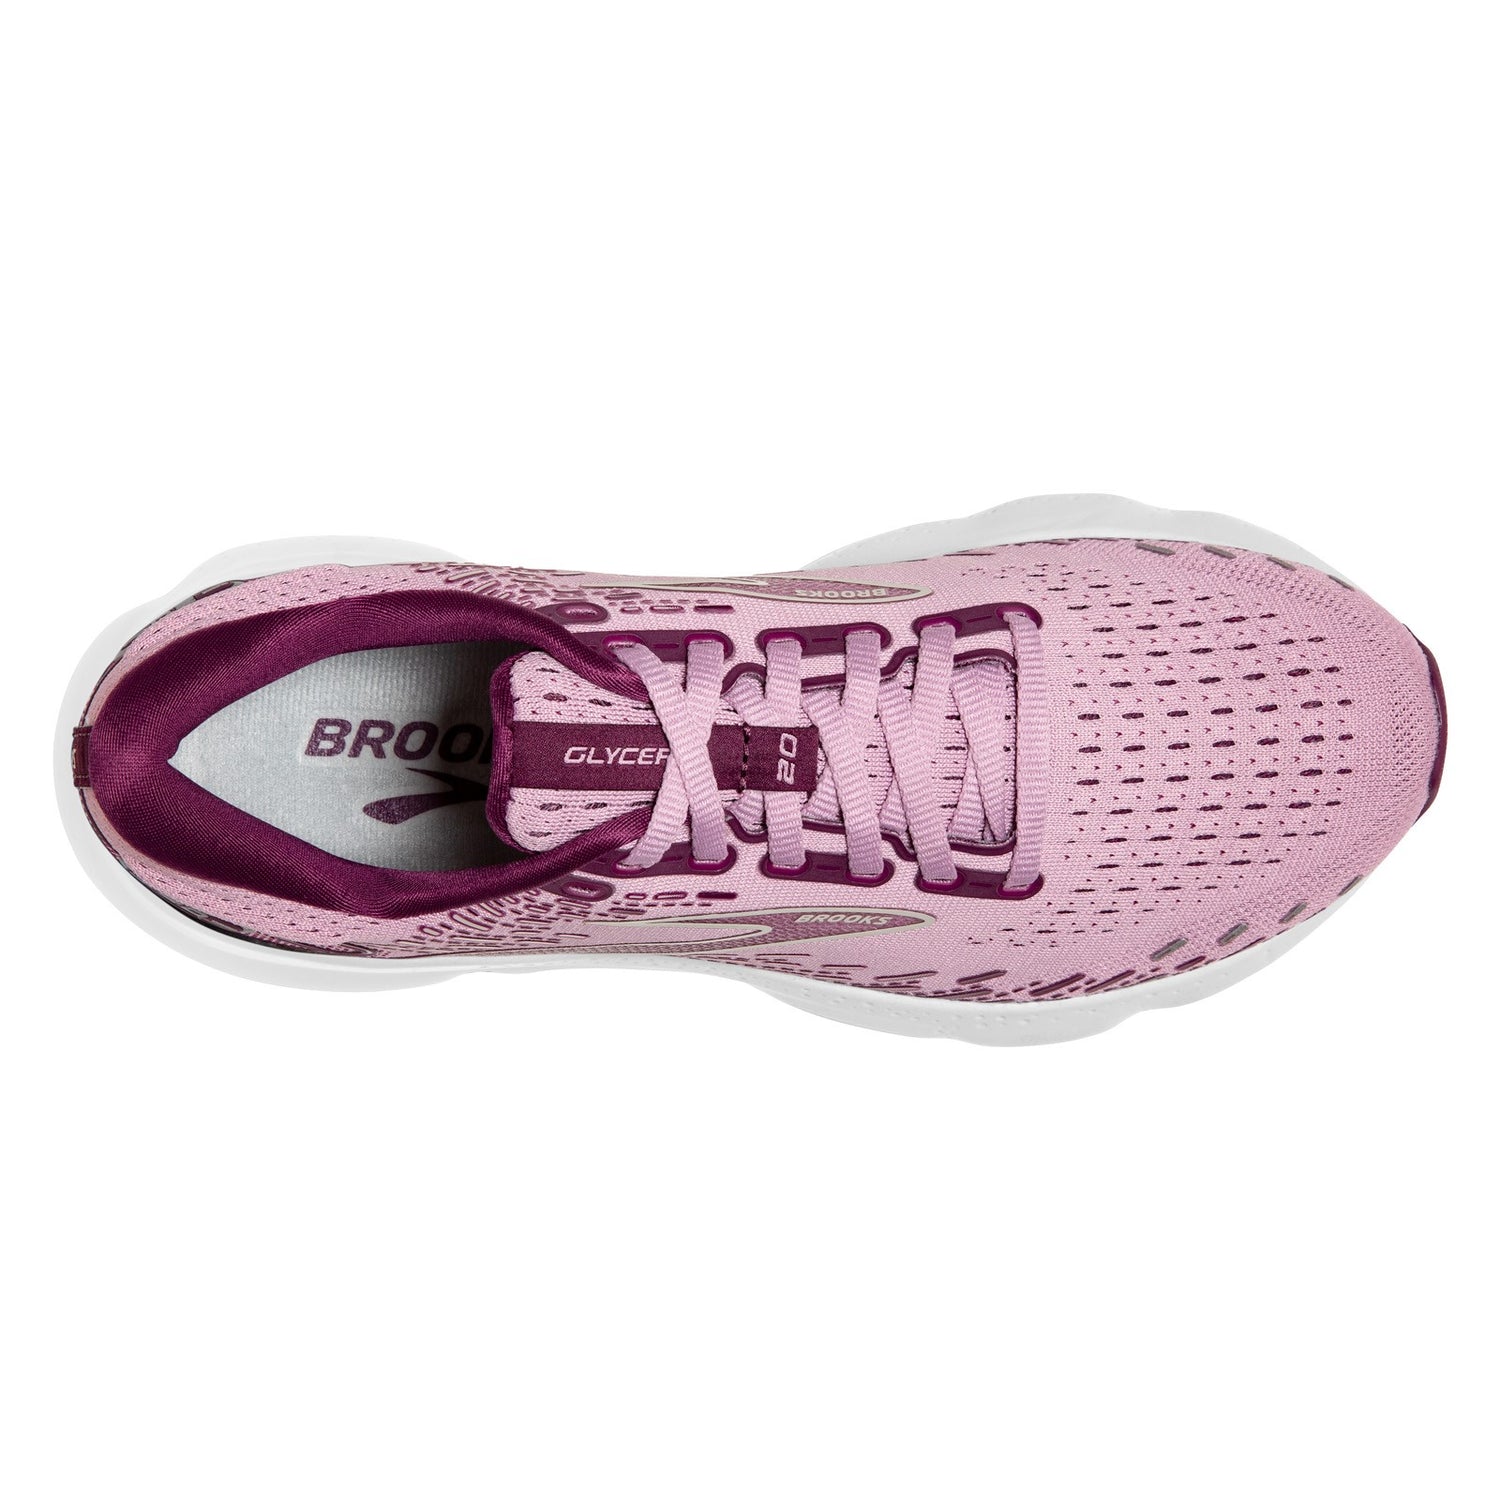 Peltz Shoes  Women's Brooks Glycerin 20 Running Shoe Mauve/Grape/Grey 120369 1B 577